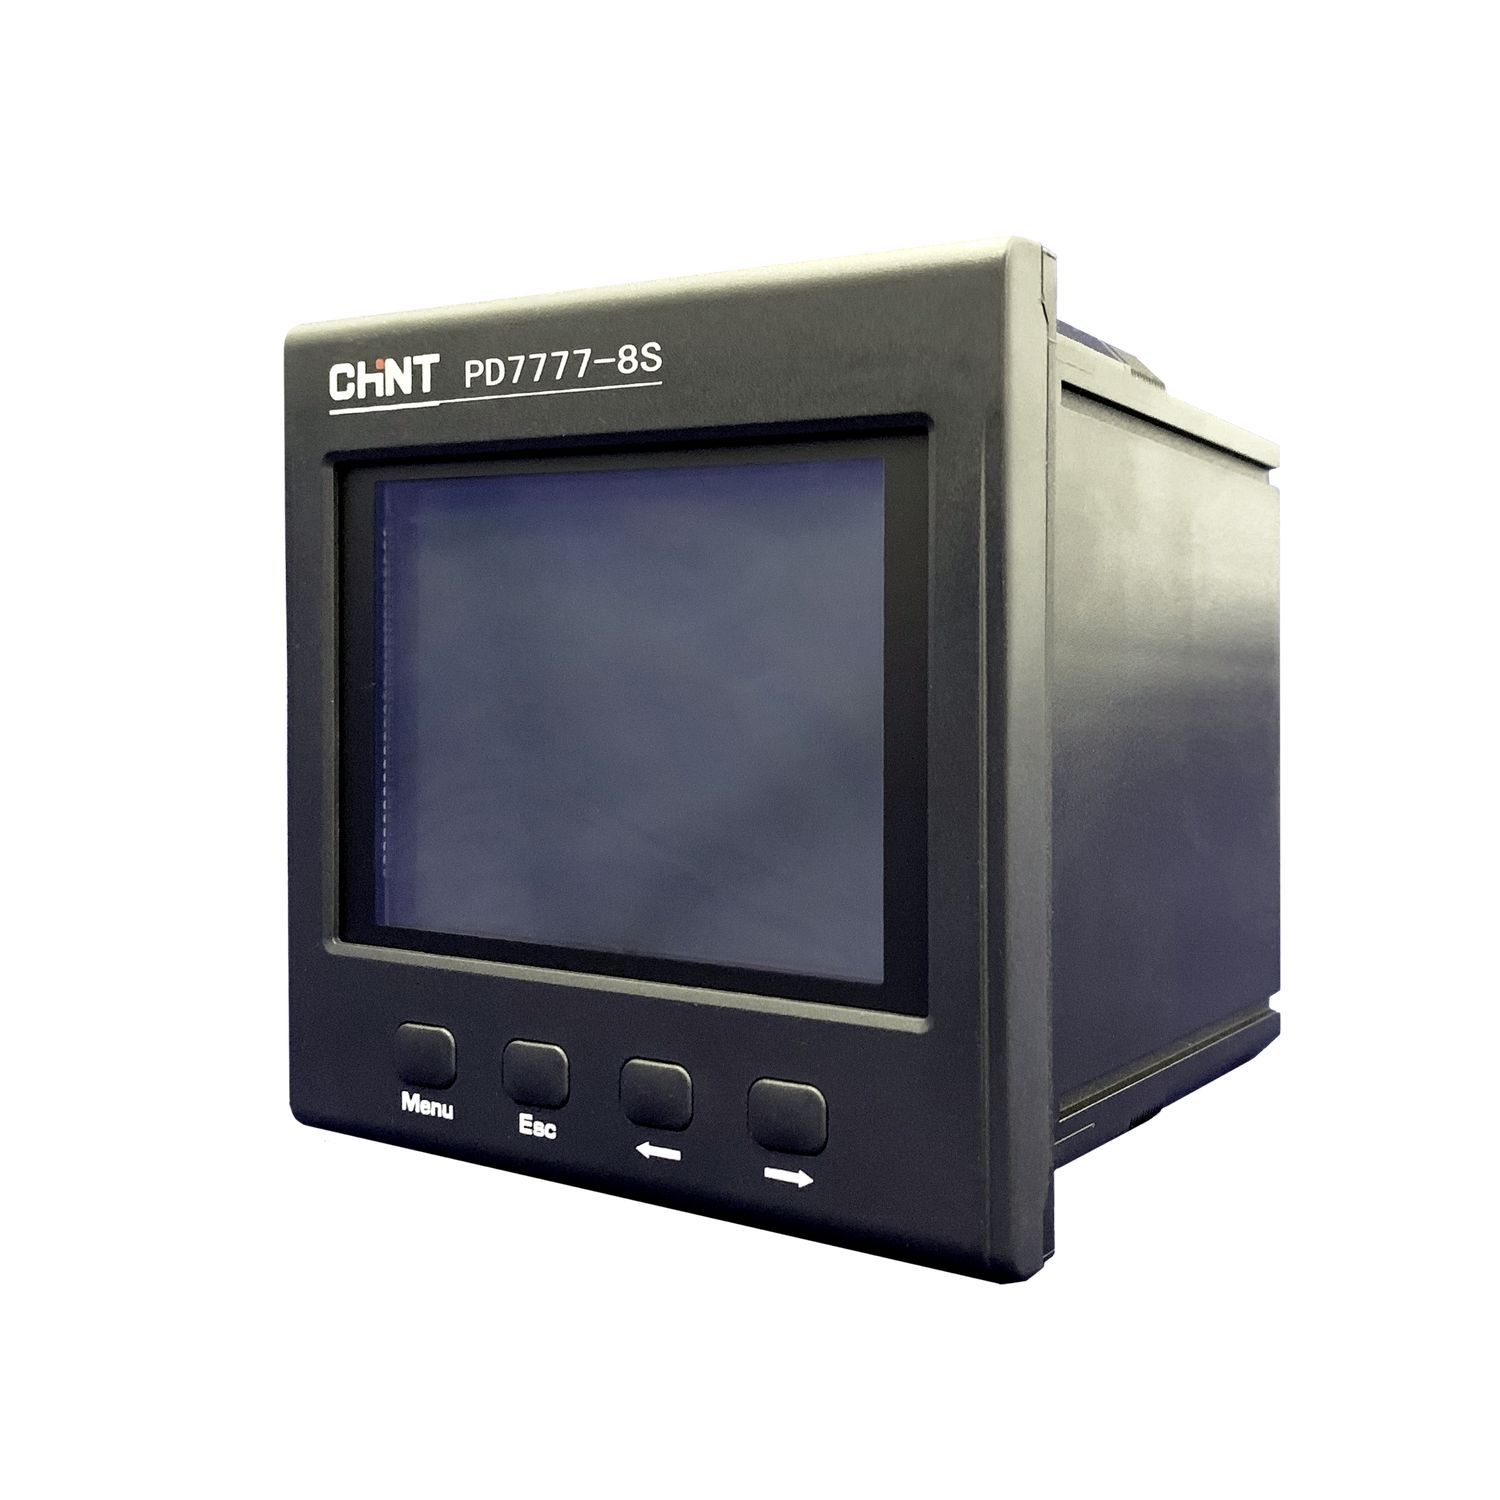 измерительный и разметочный инструмент deli рулетка home series deli ht8519 5м х 19мм Прибор измерительный многофункциональный PD7777-8S3 380В 5А 3ф 120х120 LCD дисплей RS485 C